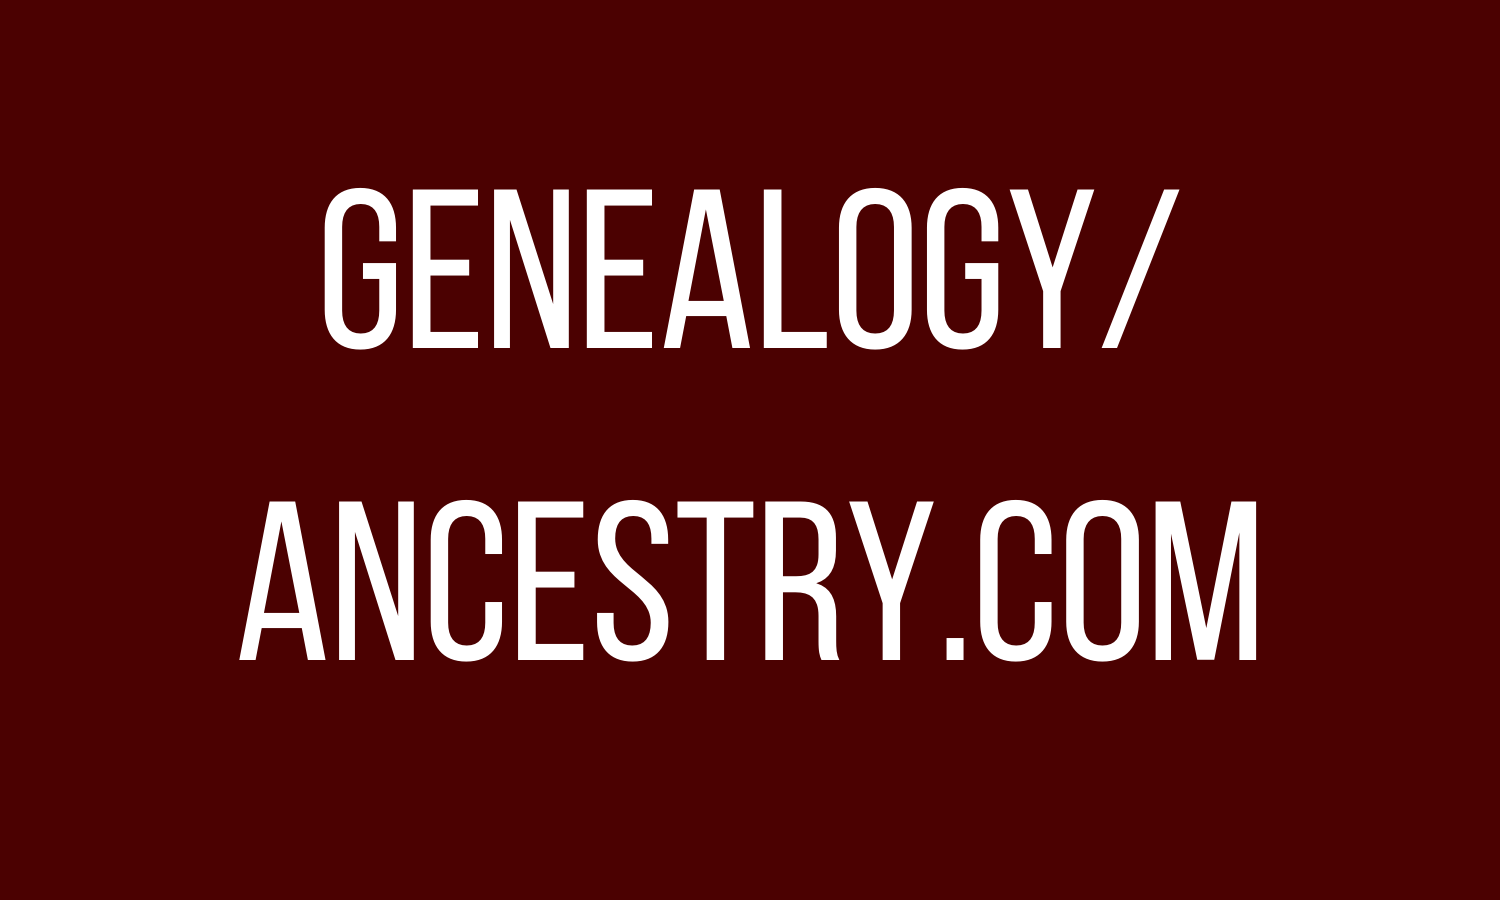 Genealogy/Ancestry.com